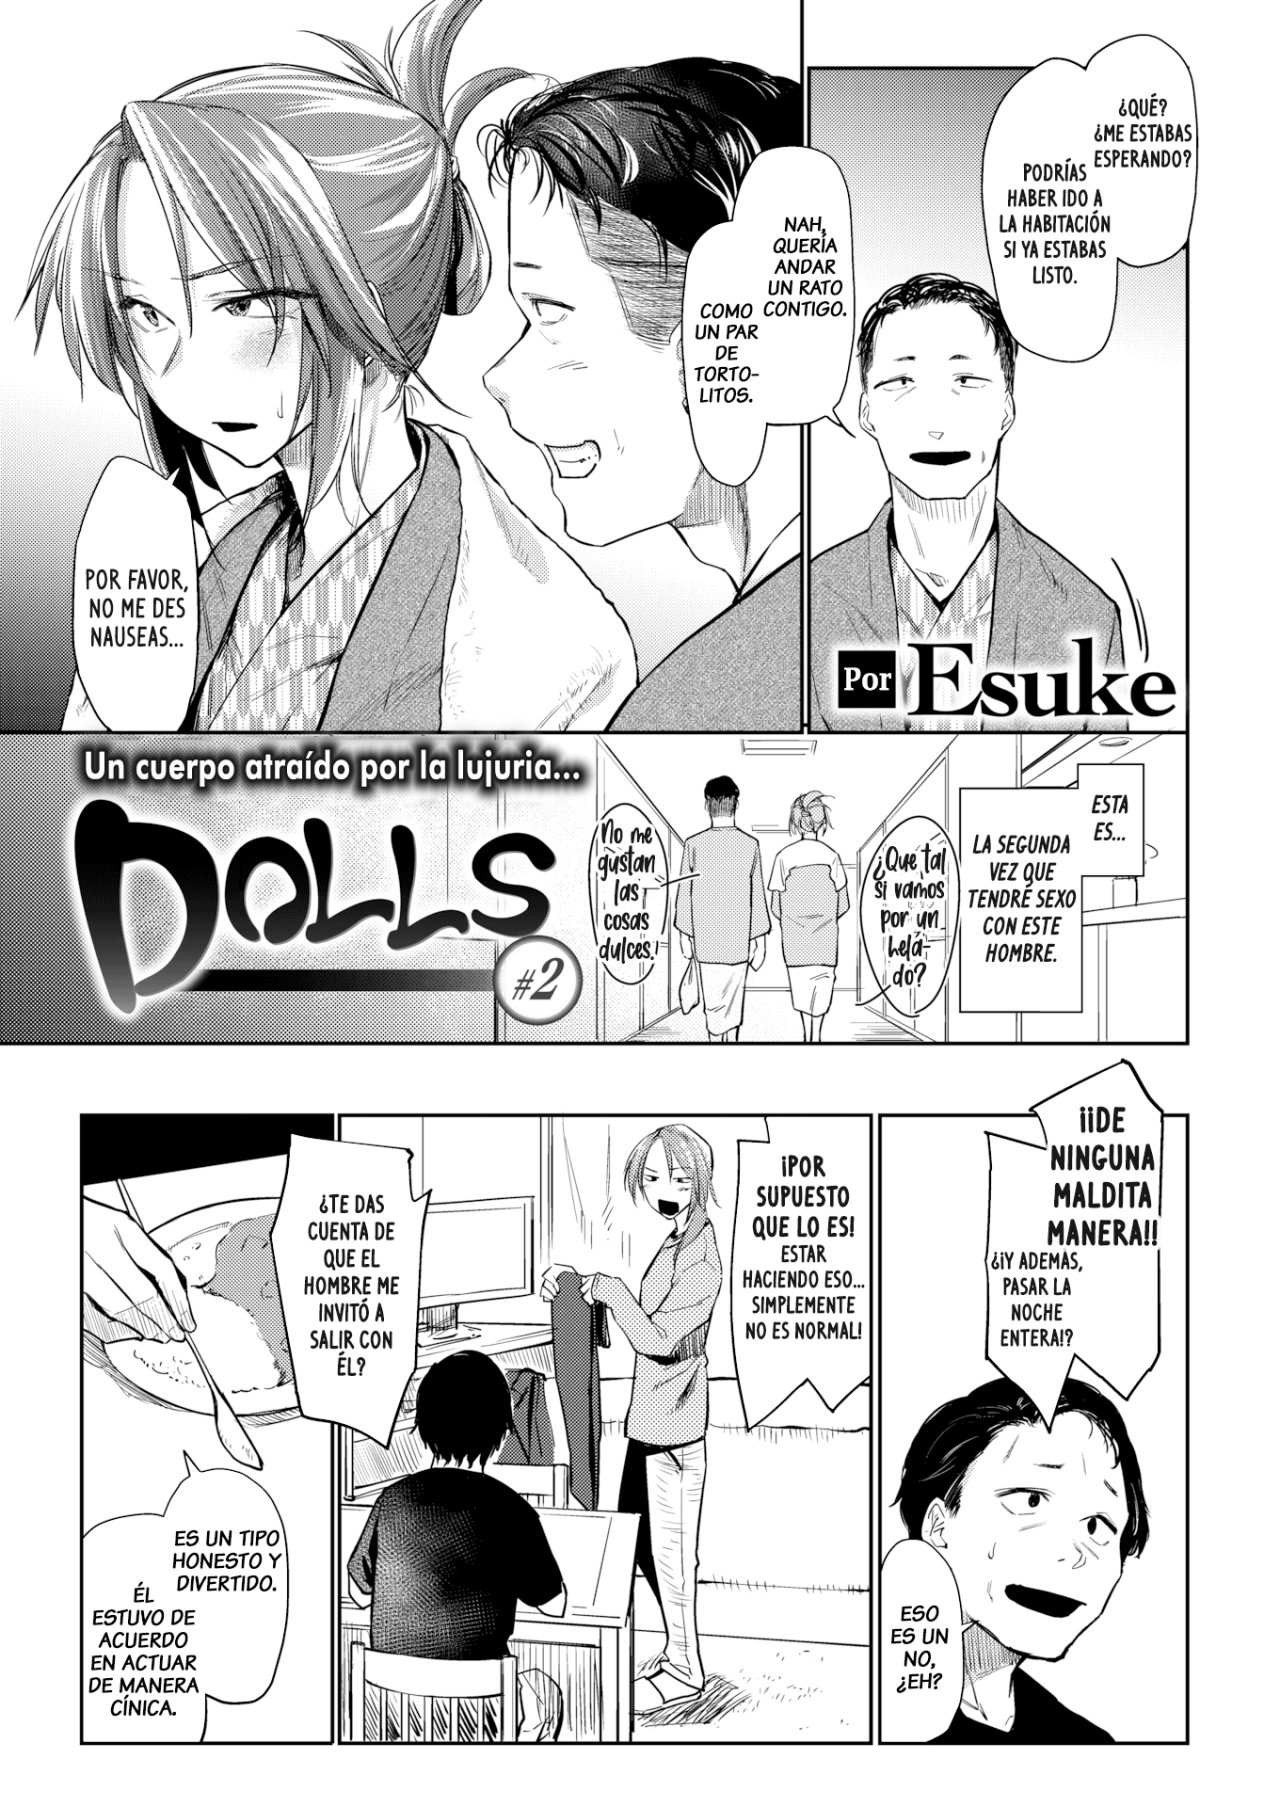 Dolls #2 (Esuke) - 3